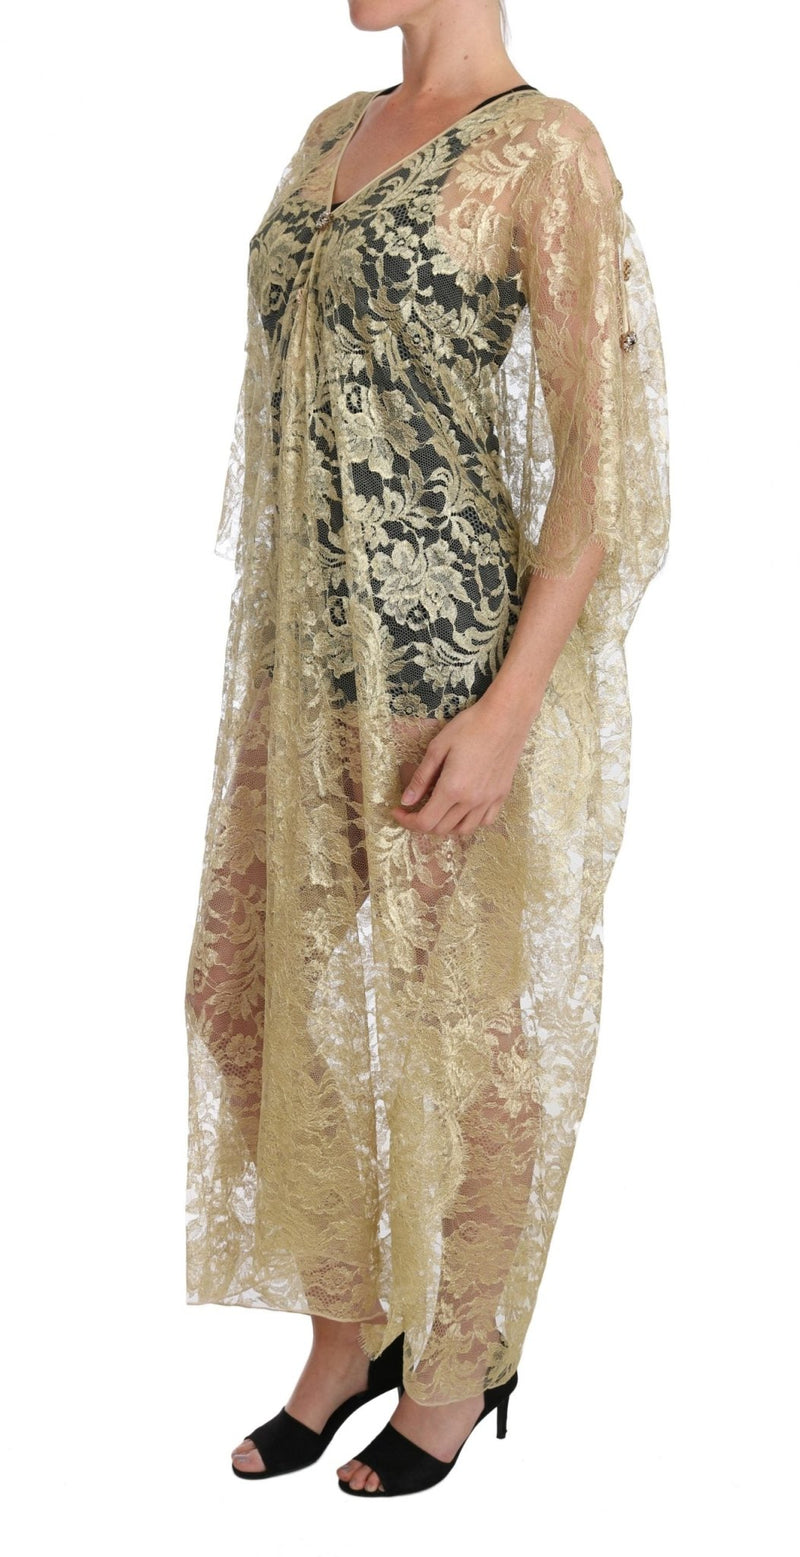 Gold Floral Lace Crystal Gown Cape Dress - Avaz Shop